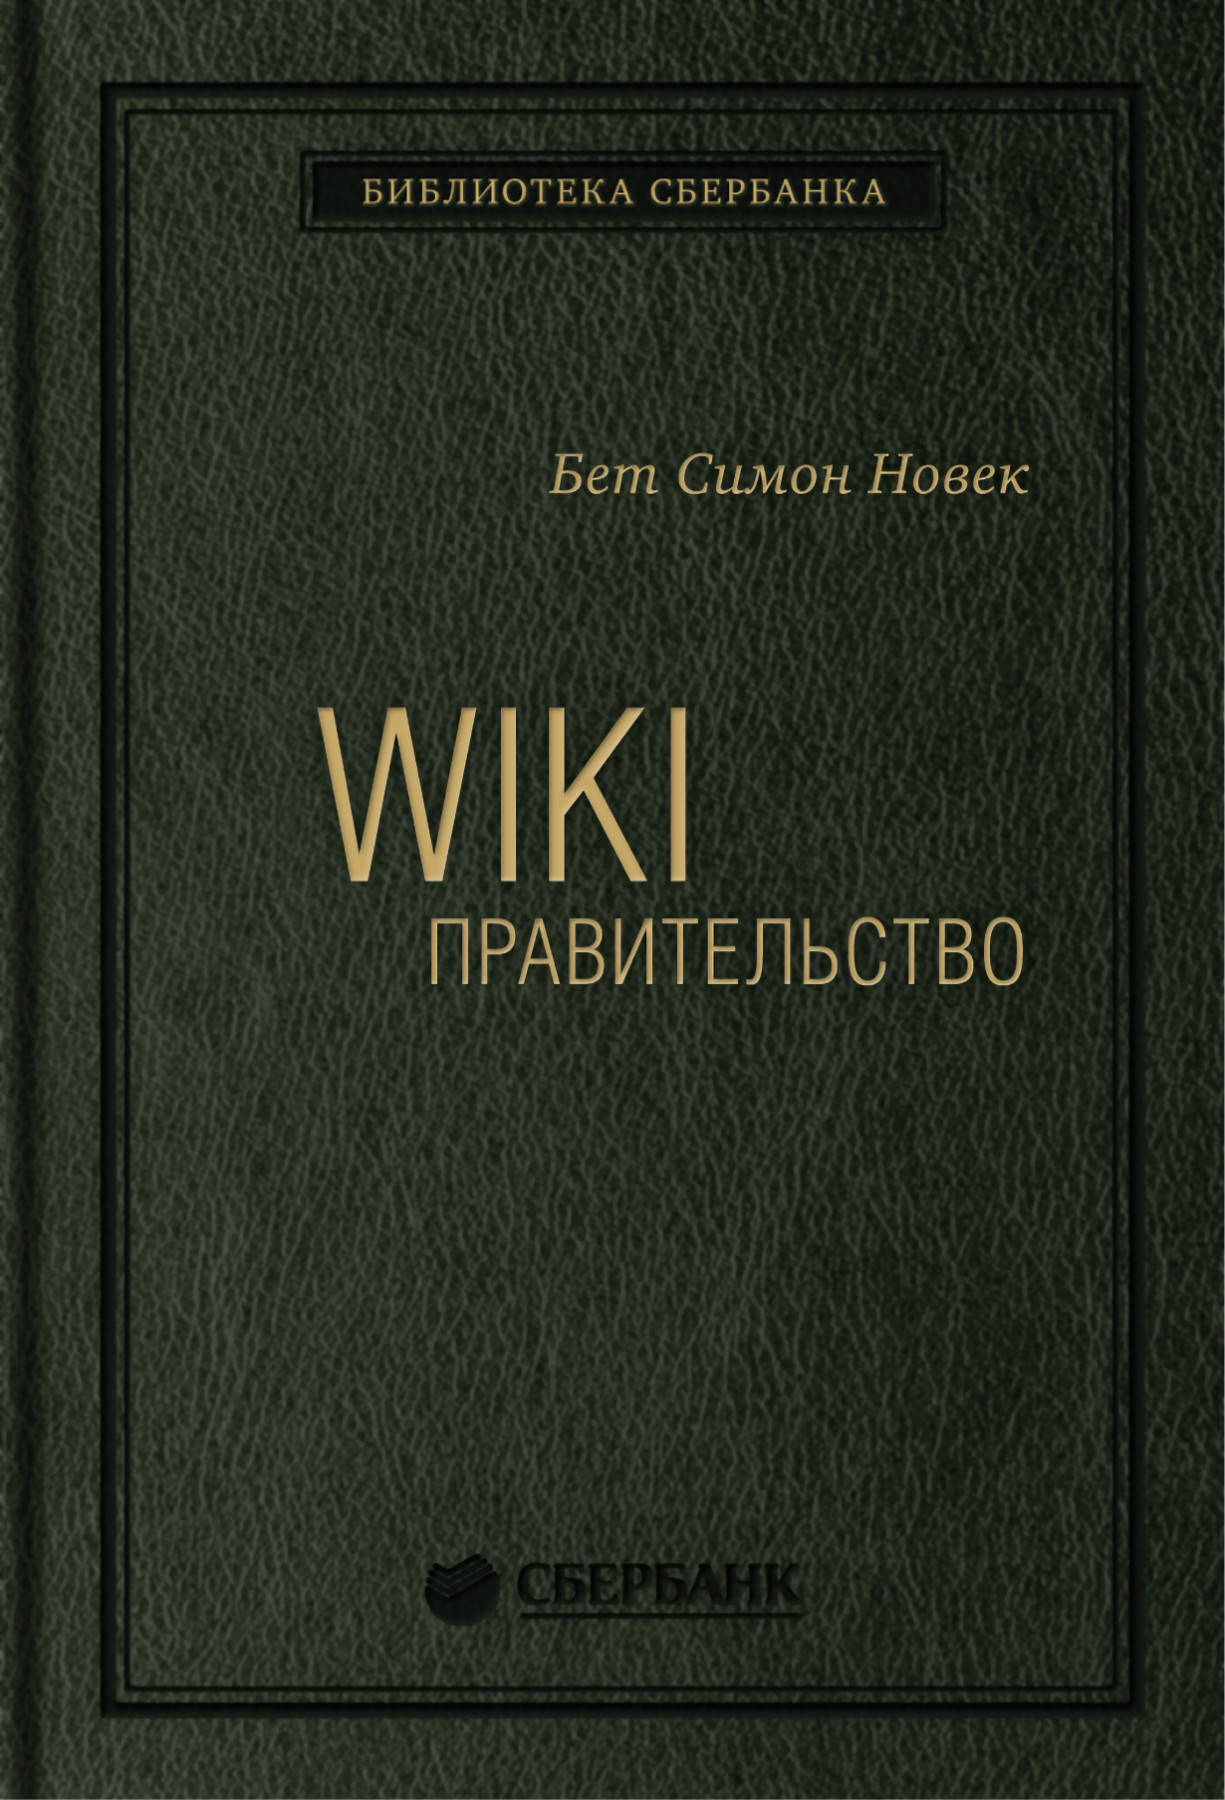 Wiki-правительство обложка.